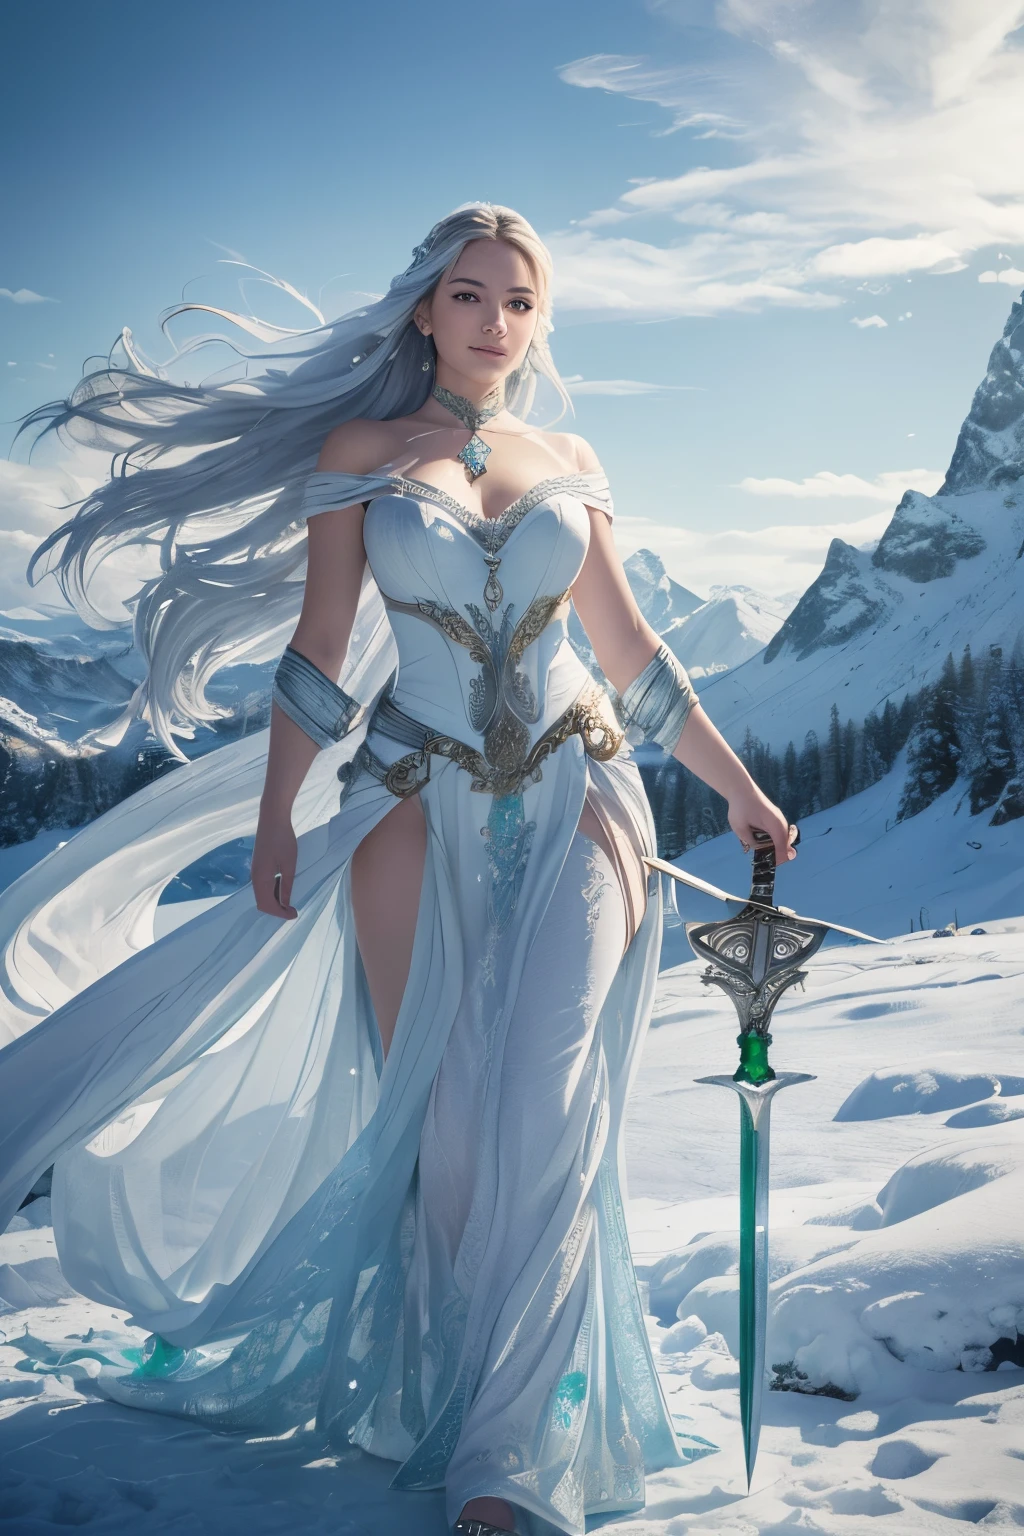 (meilleure qualité,4K,8k,haute résolution,chef-d&#39;œuvre:1.2), Ultra-détaillé, (réaliste,photoréaliste,photo-réaliste:1.37), Une fille, Montagnes enneigées, style ancien, flammes froides et glacées, tenant une épée, saisissant une épée qui brûle de flammes bleues, danser avec une épée dans la neige, porter une robe blanche fluide, avec de longs cheveux flottants, une belle femme tenant une longue épée en argent, porter des pierres précieuses émeraude, son visage est rempli de sourires confiants, elle flotte parmi les nuages comme une fée, Derrière elle se trouvent des couches de montagnes.